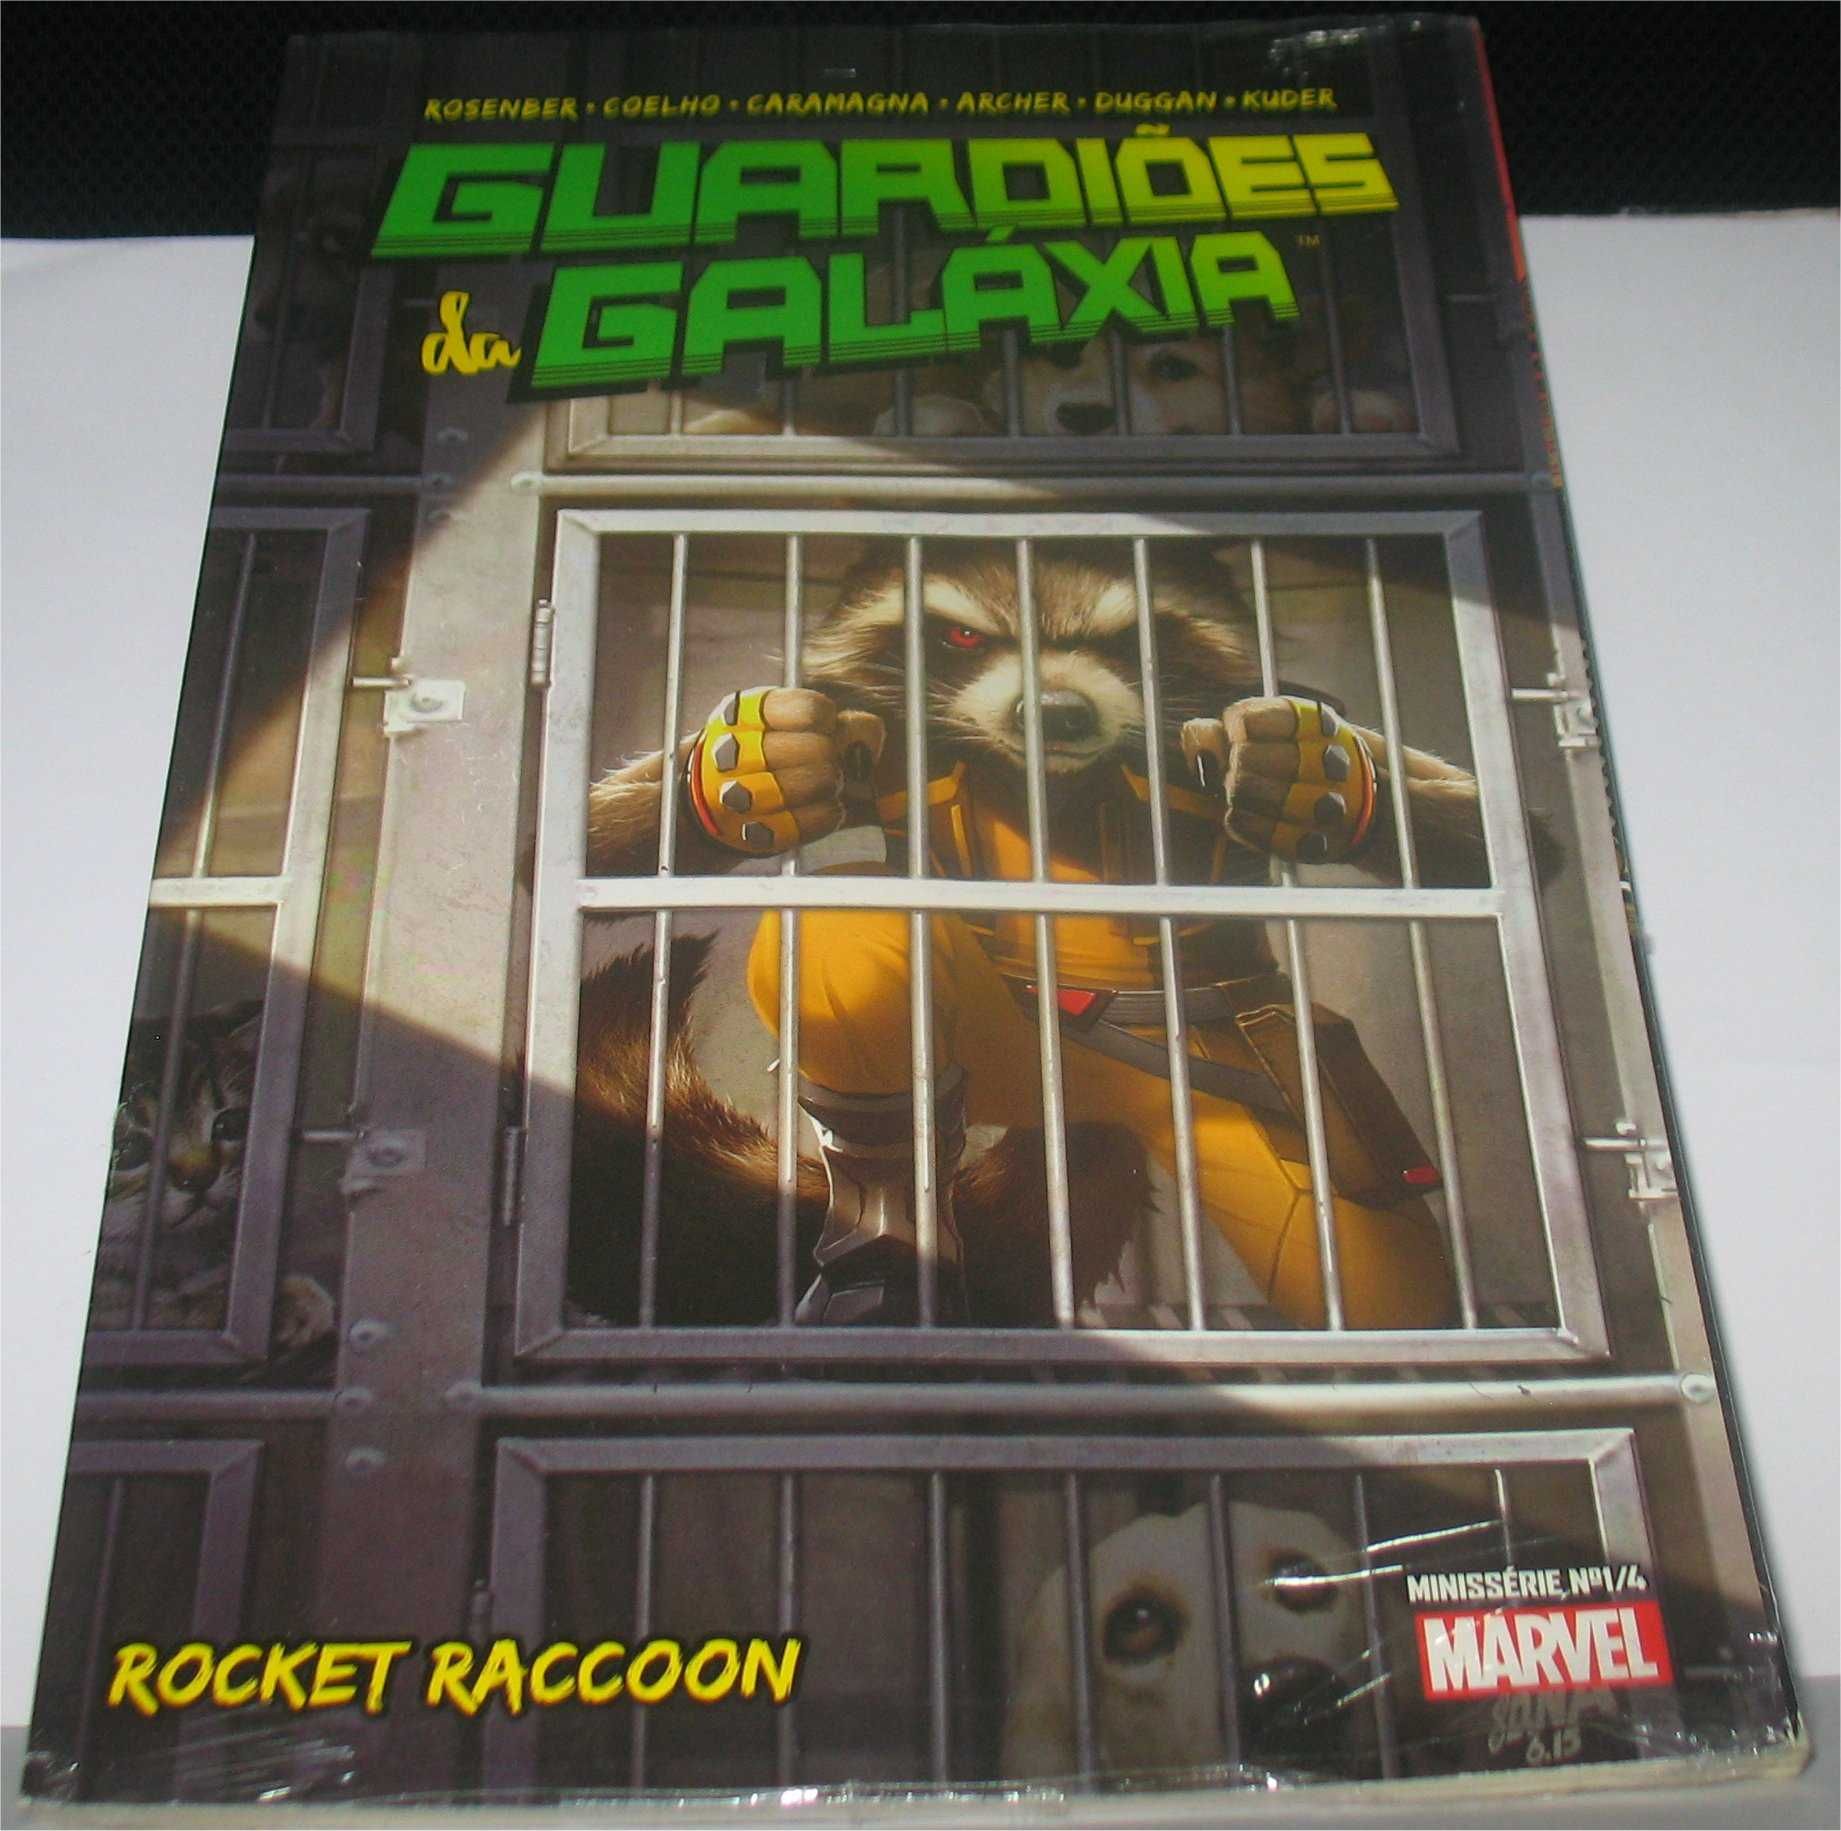 Marvel - Guardiões da Galáxia por Filipe Andrade e Jorge Coelho